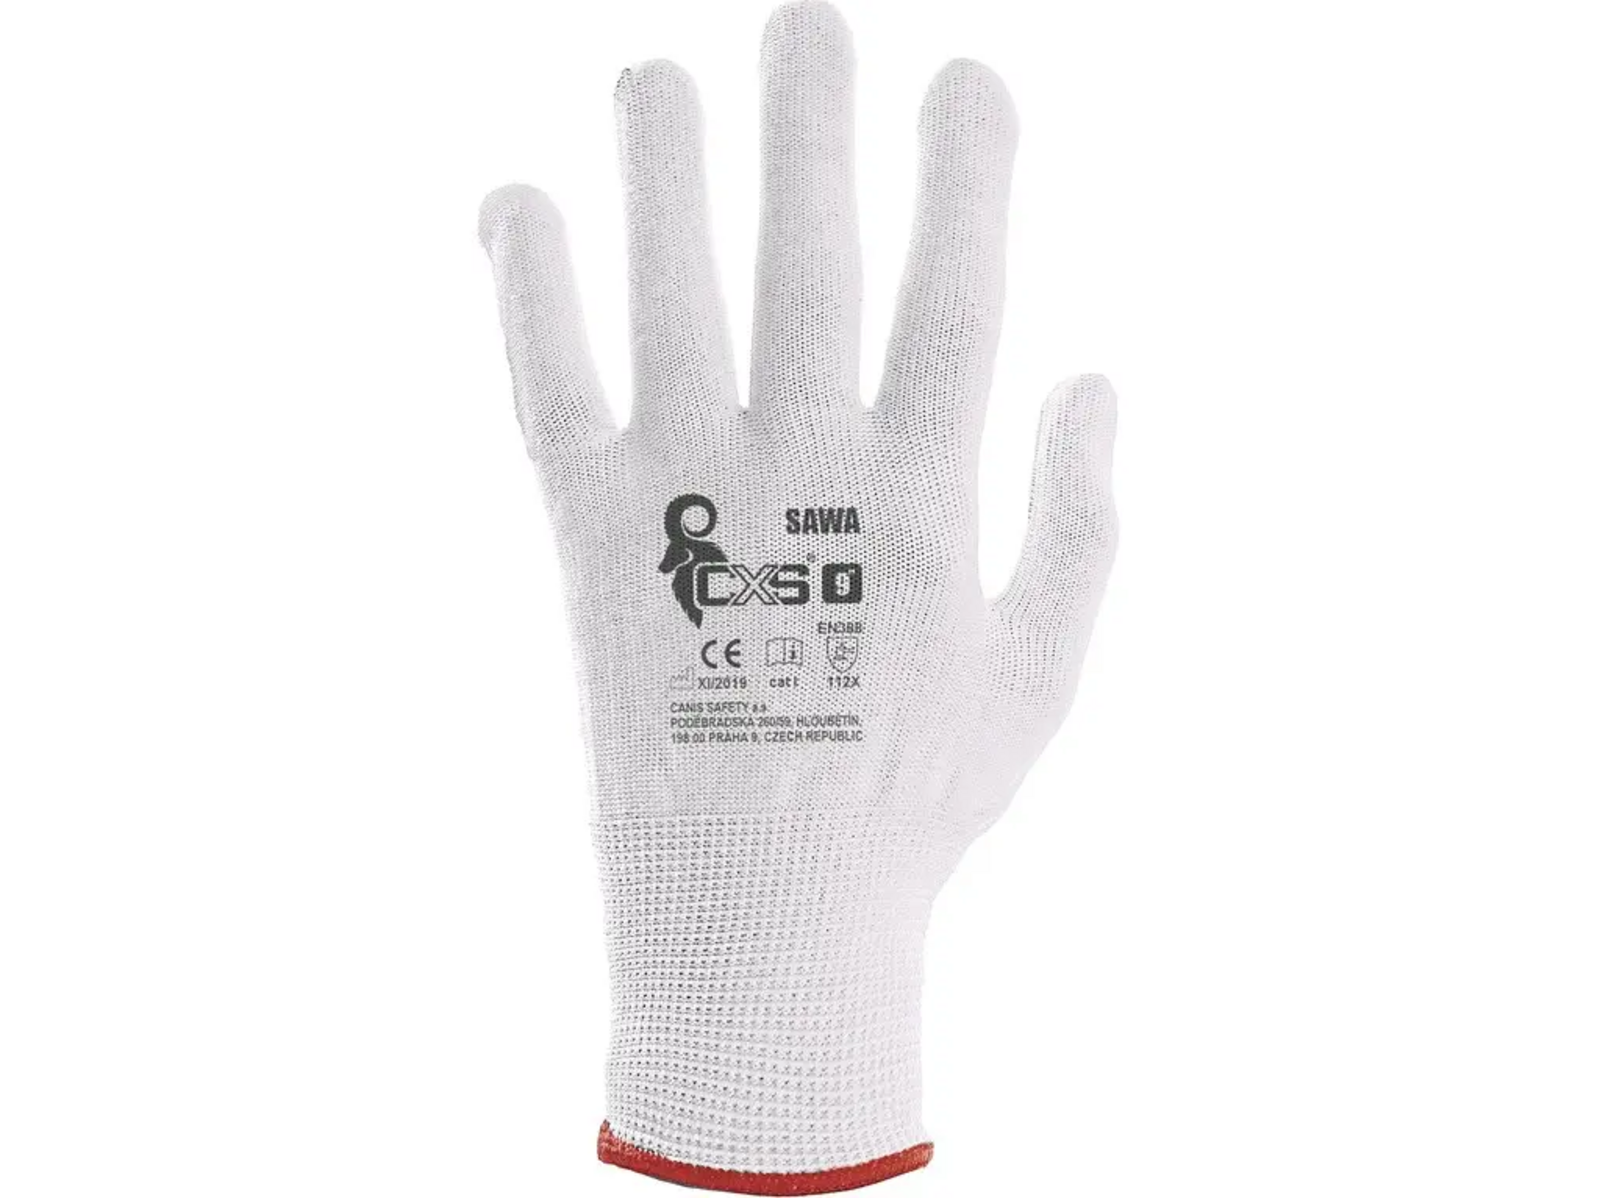 Textilné rukavice CXS Sawa - veľkosť: 9/L, farba: biela